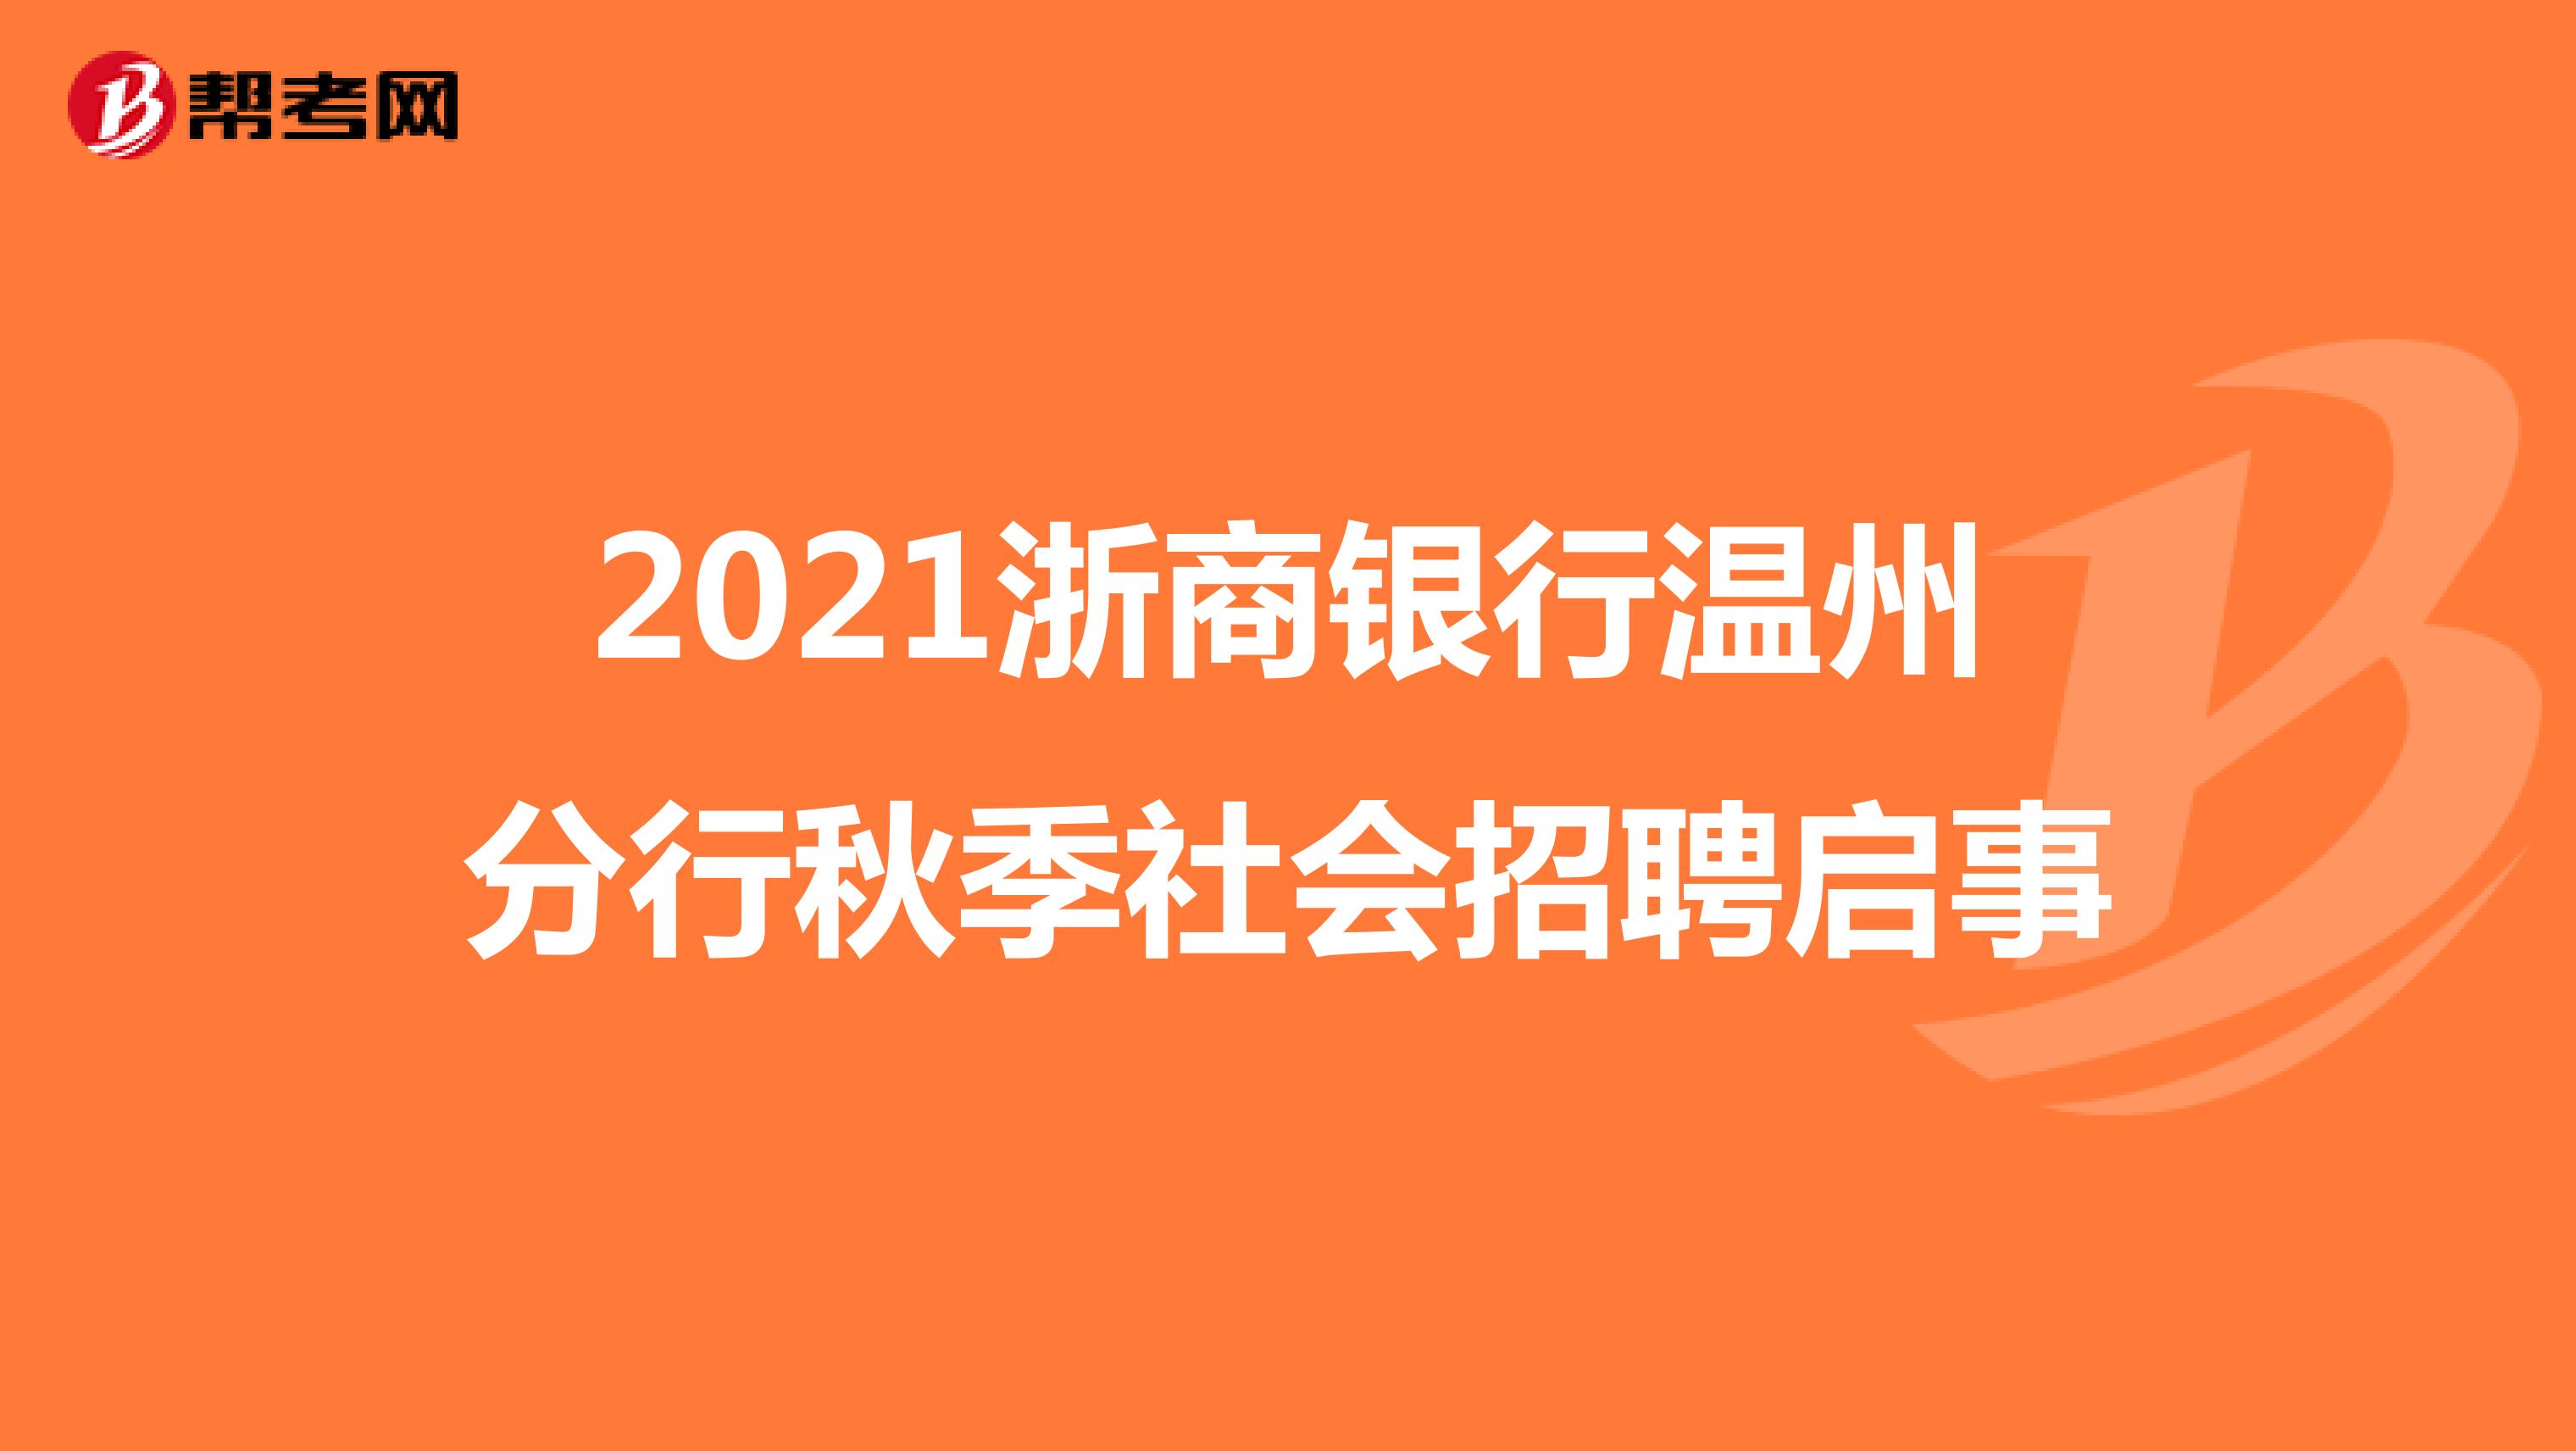 2021浙商银行温州分行秋季社会招聘启事